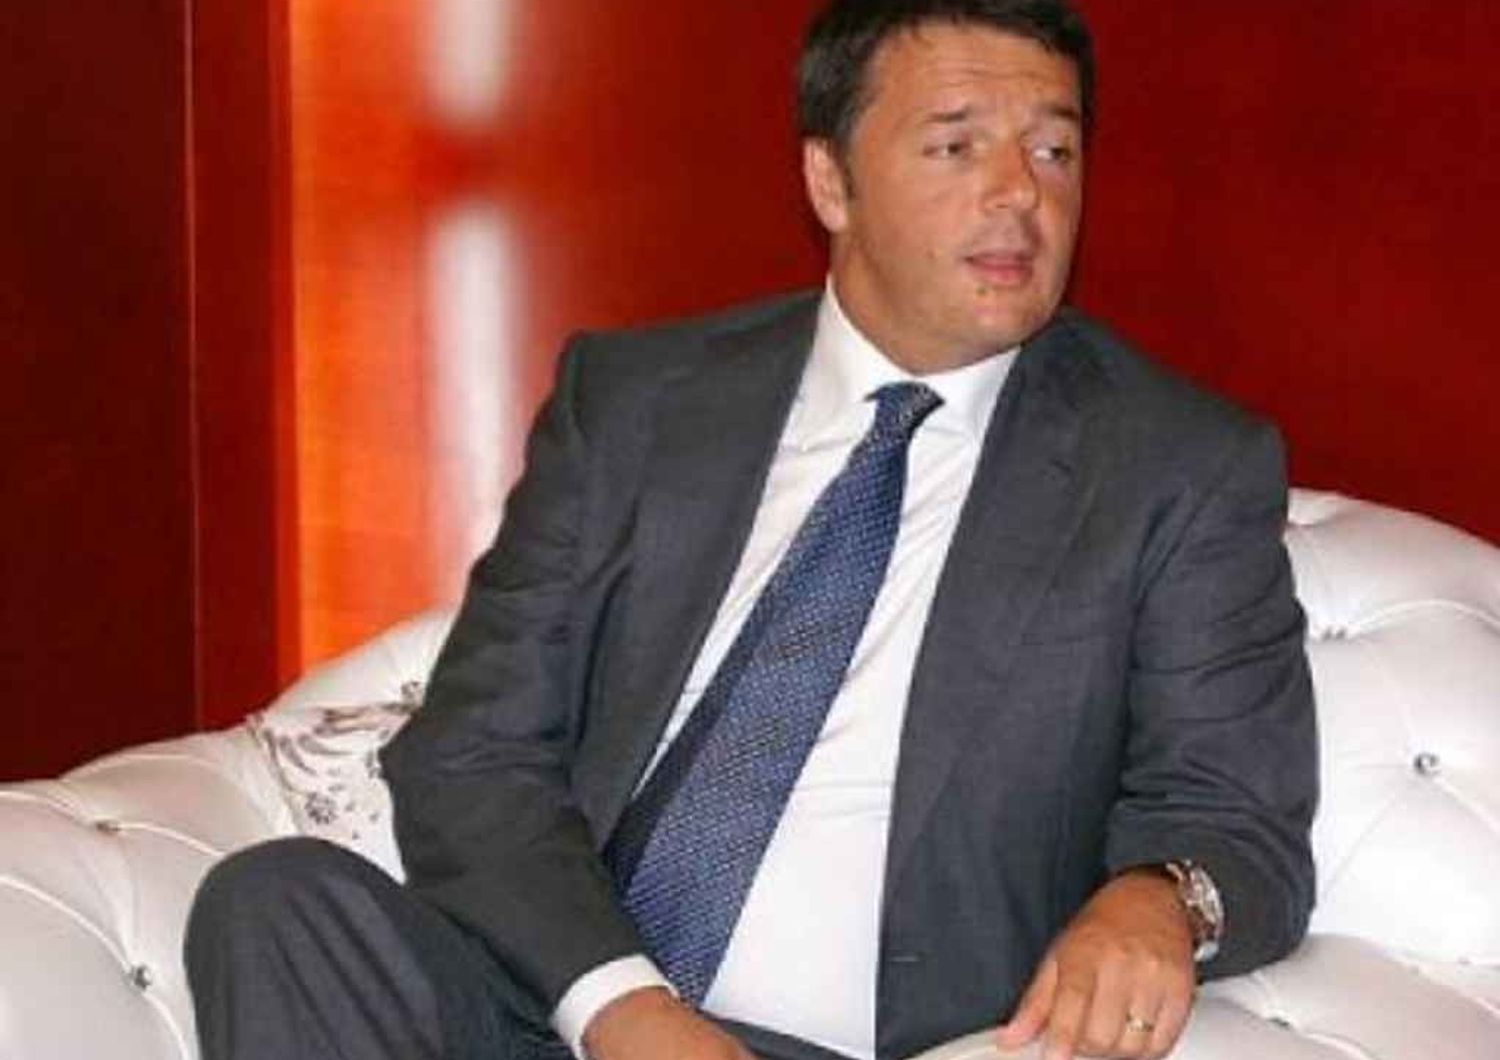 Renzi to continue collaboration with Forza Italia